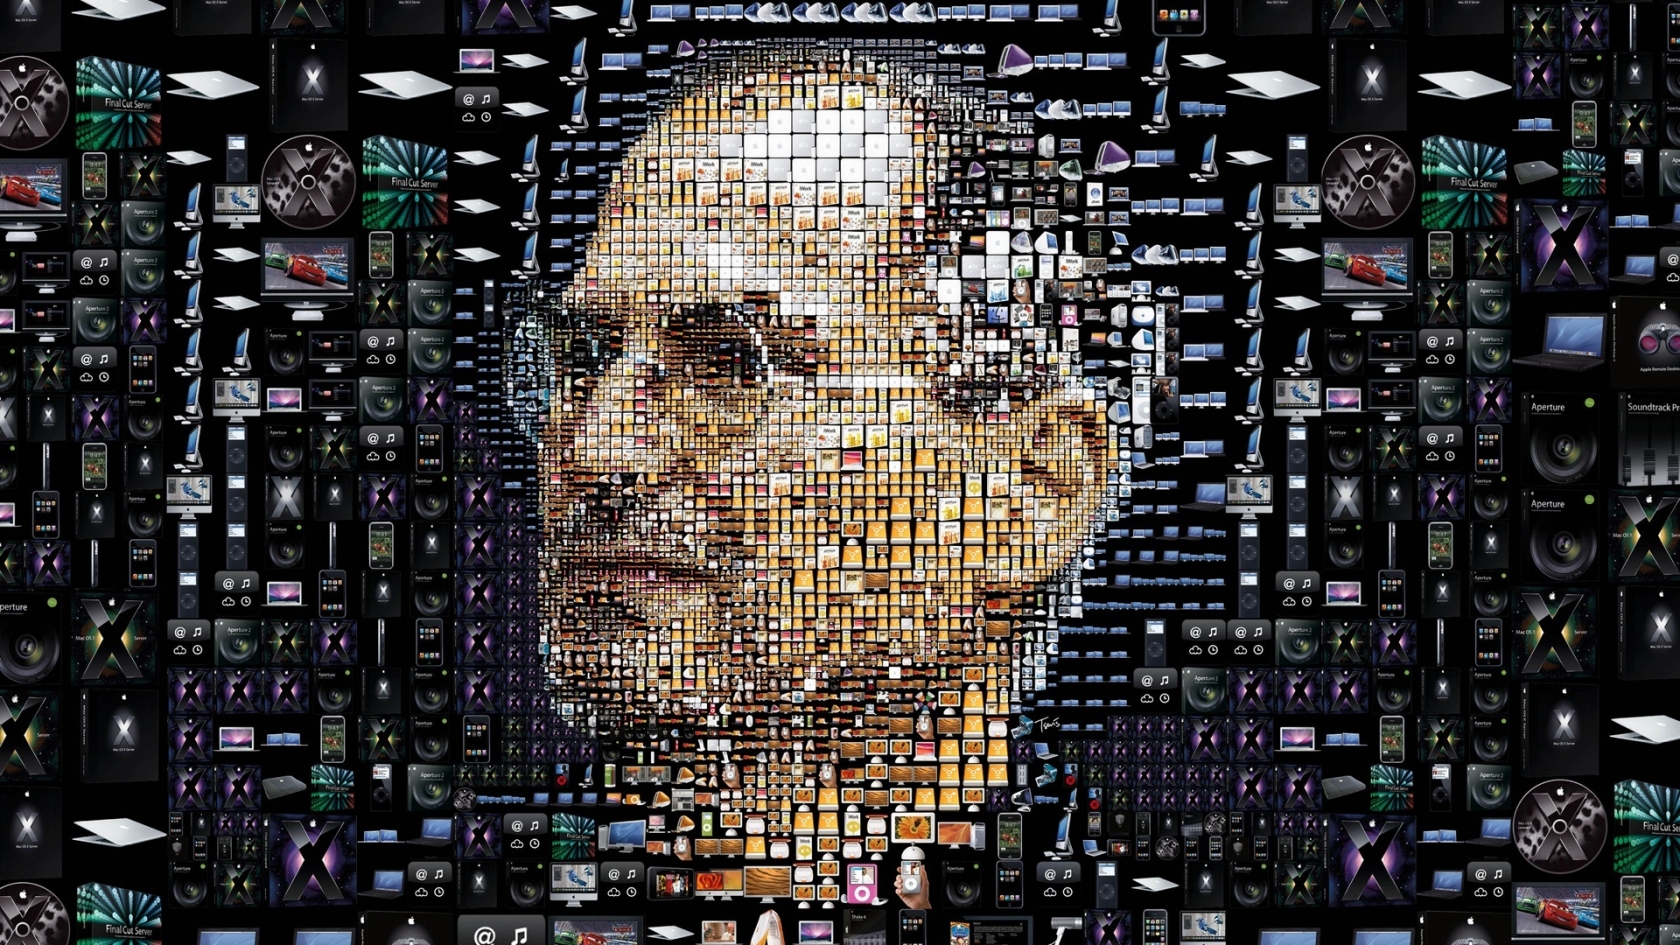 Steve Jobs for 1680 x 945 HDTV resolution